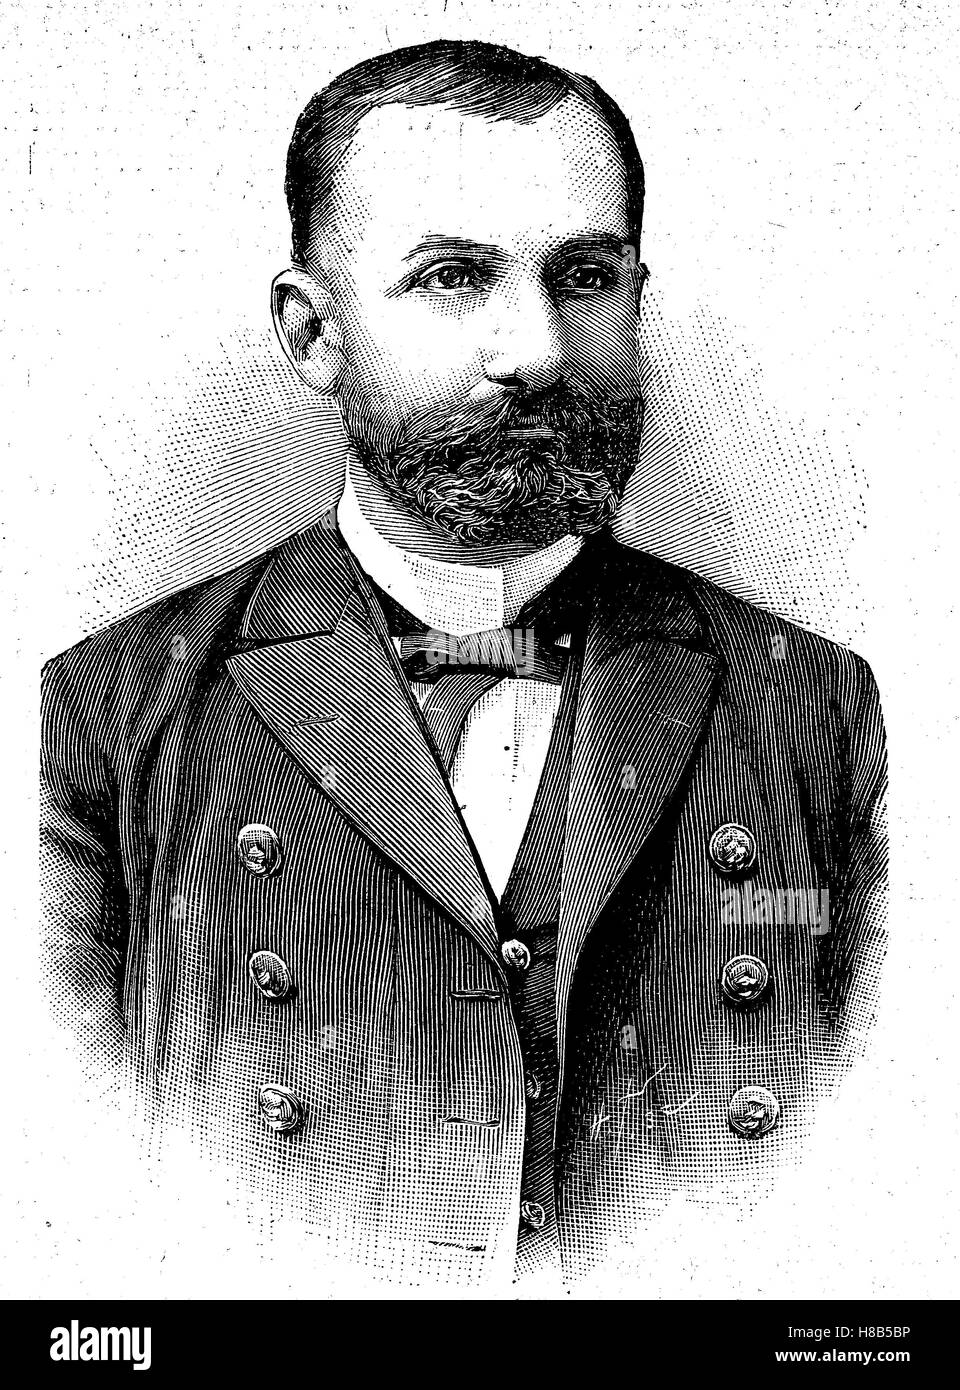 Jorge Montt Alvarez war Vizeadmiral der chilenischen Marine und Präsident von Chile in den Jahren 1891 bis 1896, Holzschnitt aus dem Jahre 1892 Stockfoto